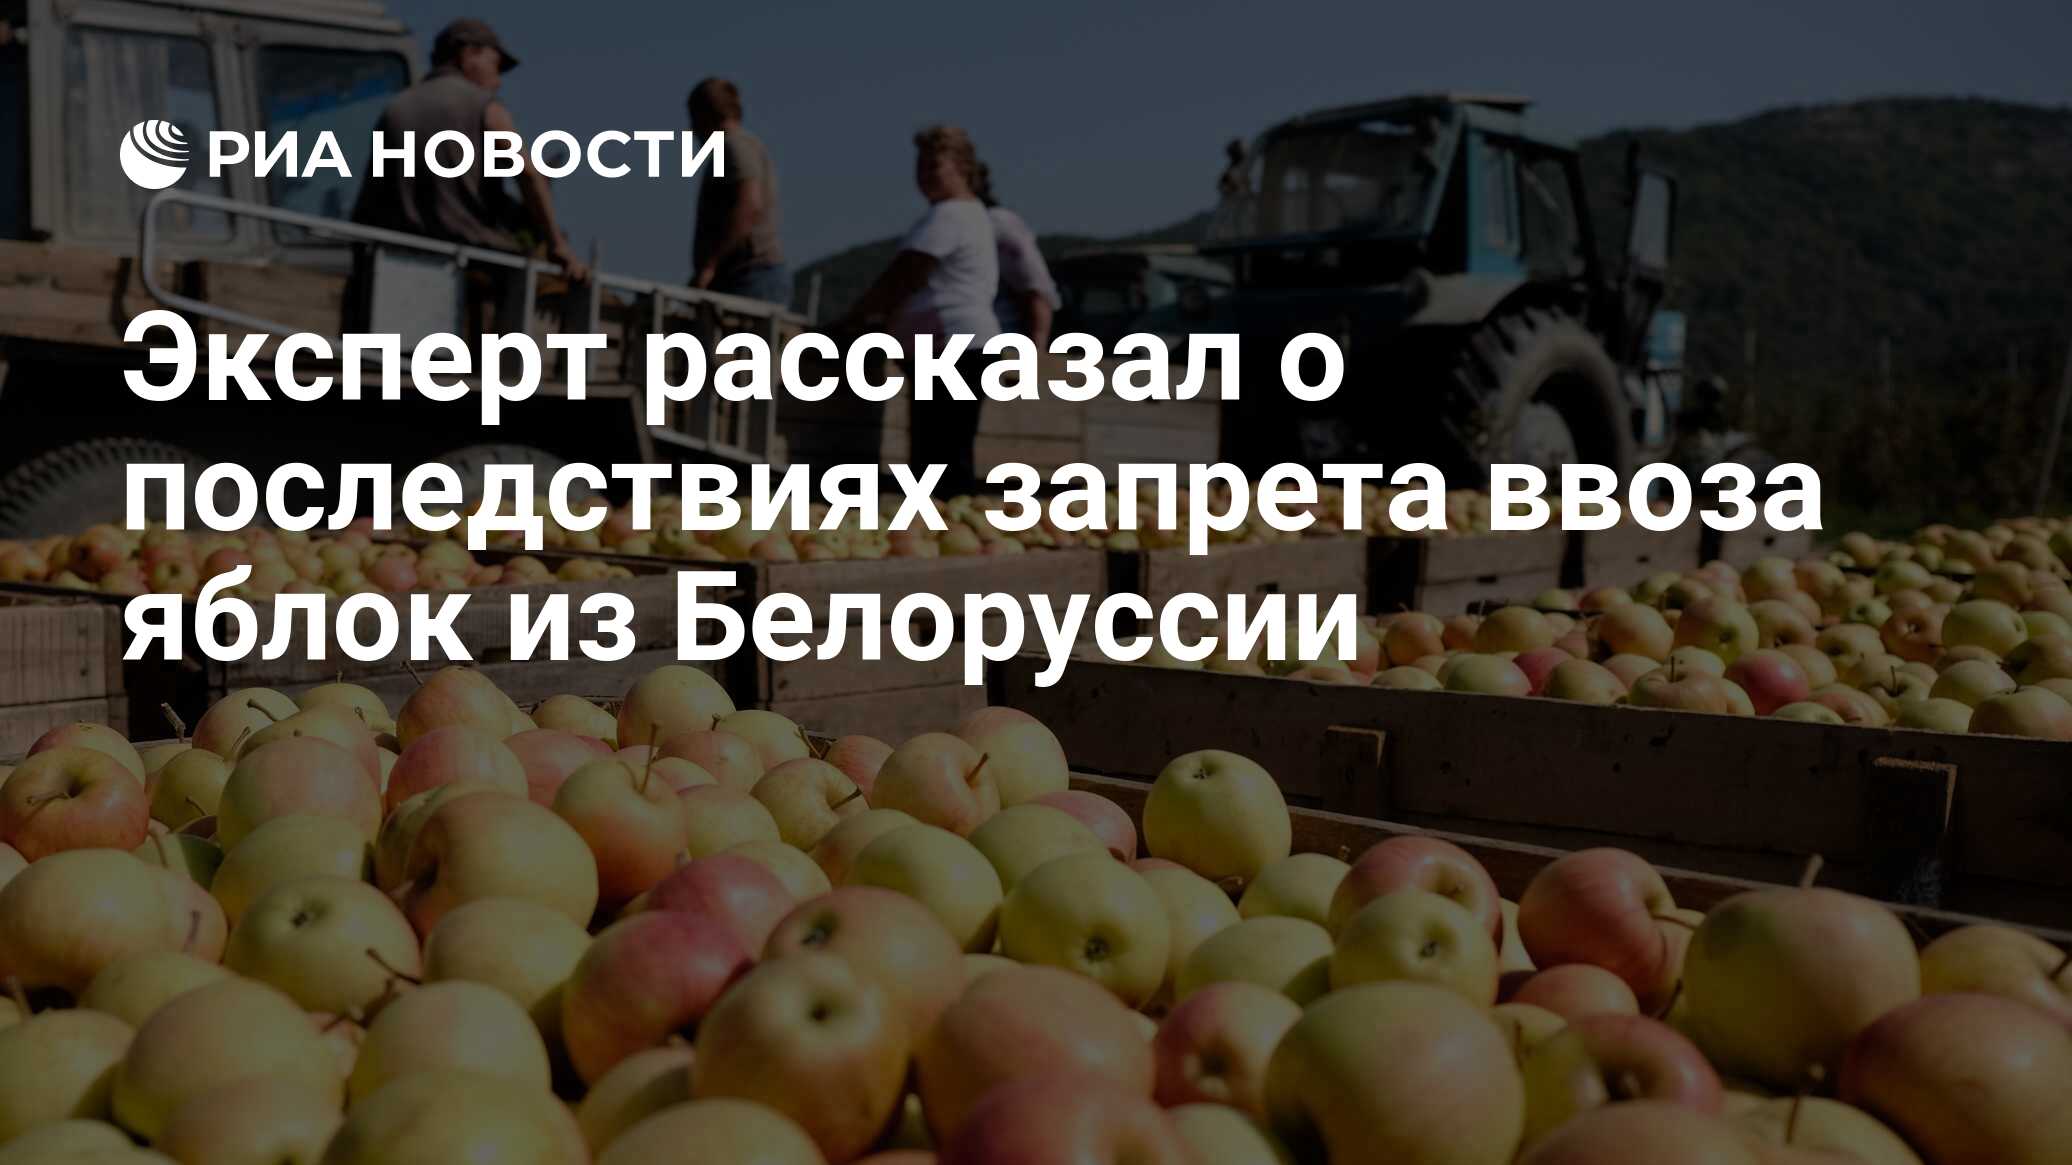 Запрет на ввоз яблок. Поляки запрещённые ко ввозу в Россию яблоки. Правительство ввело запрет на ввоз яблок и груш из других стран.